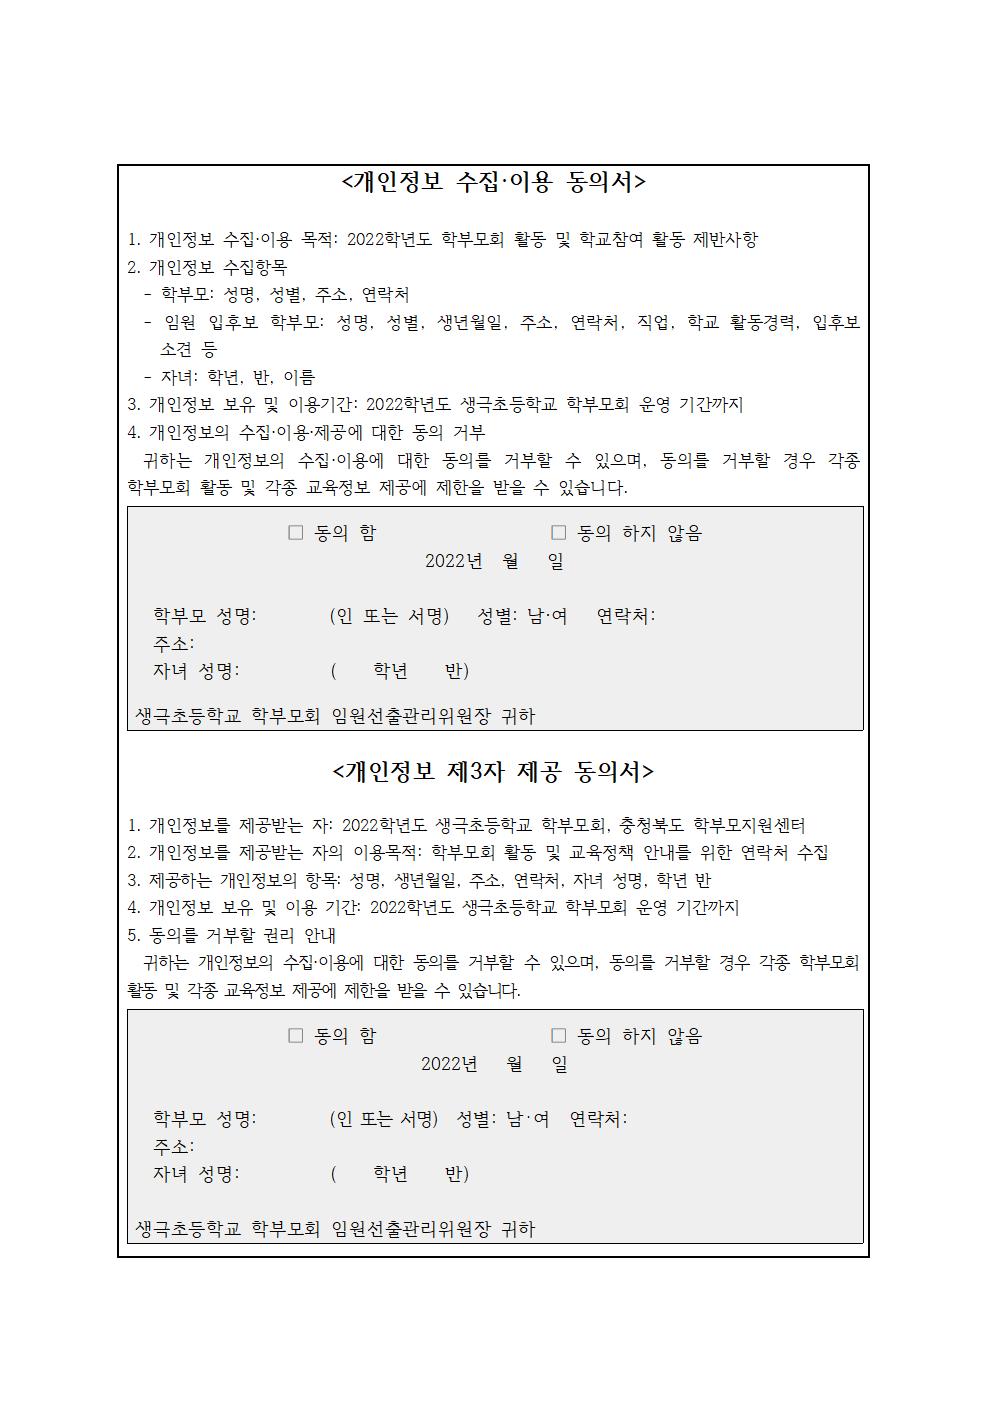 생극초등학교 학부모회 임원선출 공고문003